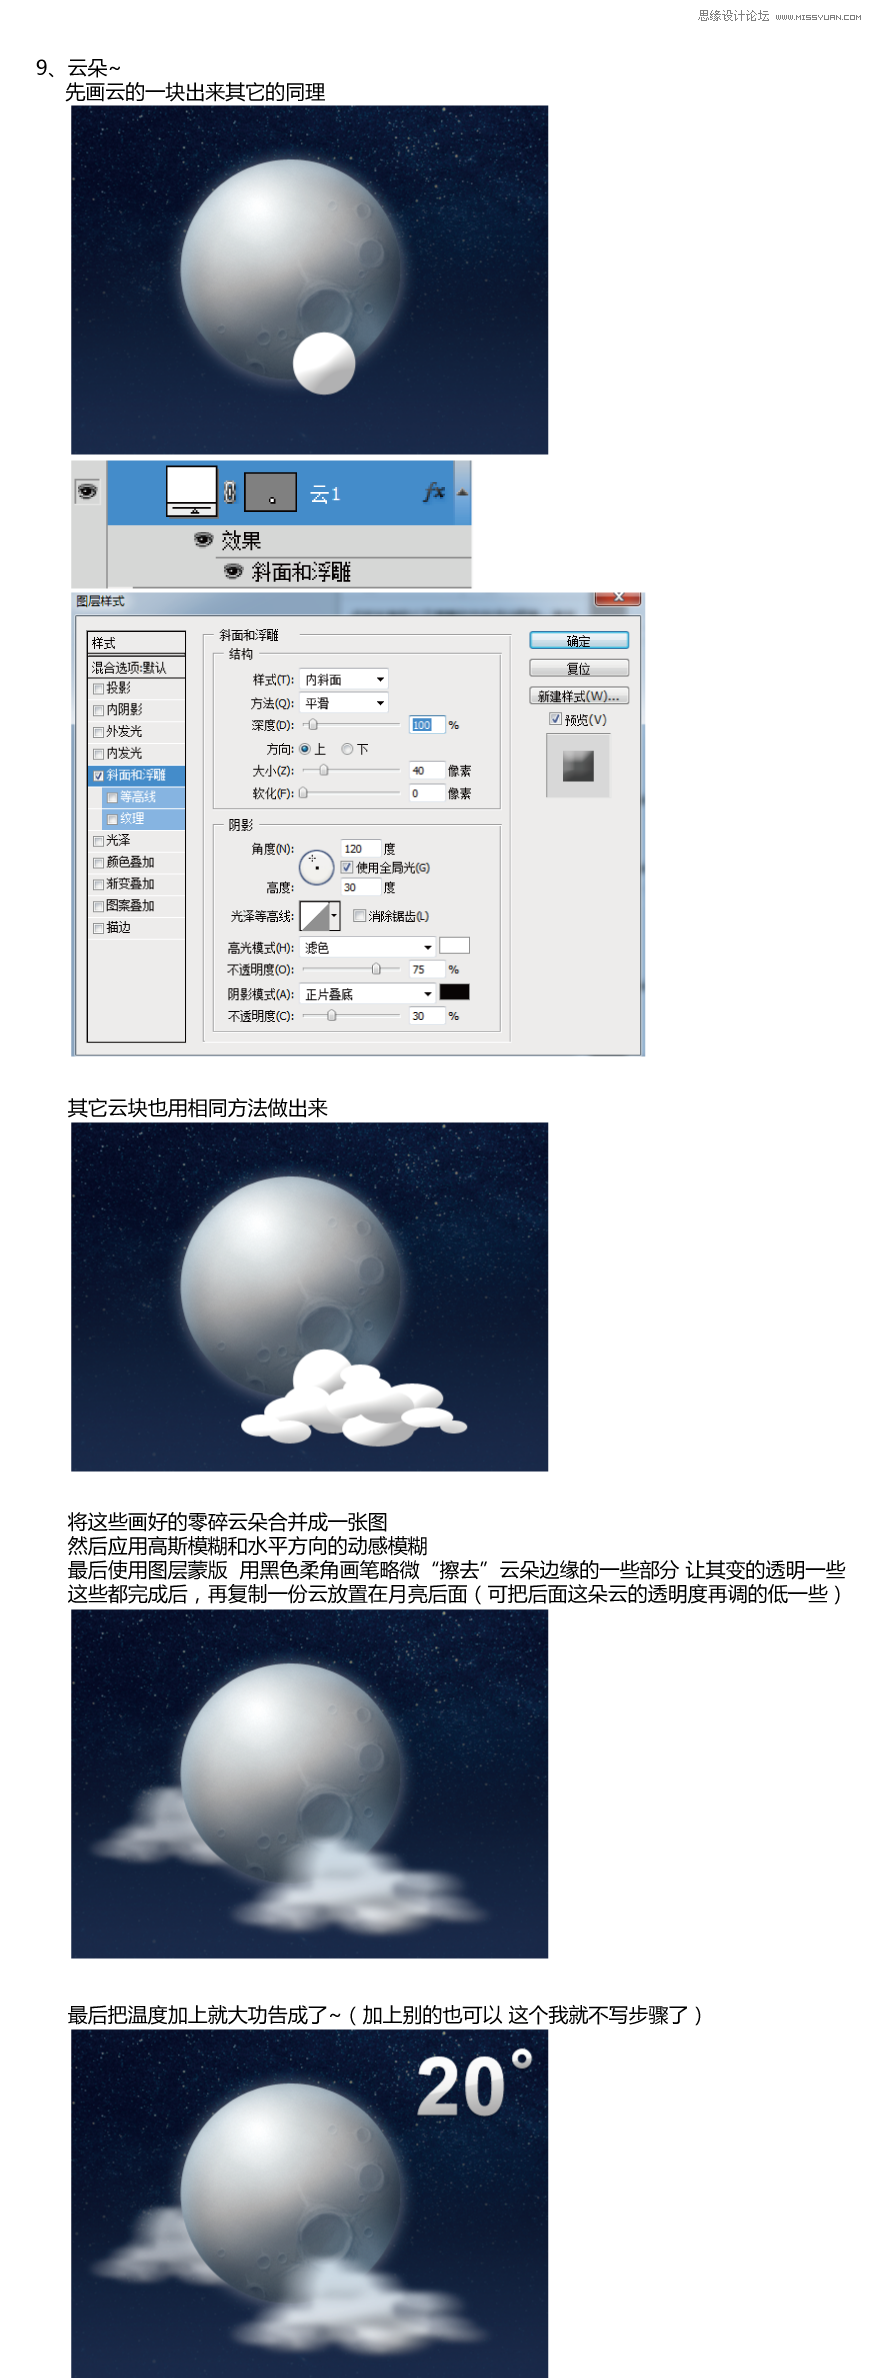 Photoshop简单绘制卡通云彩和月亮,PS教程,图老师教程网